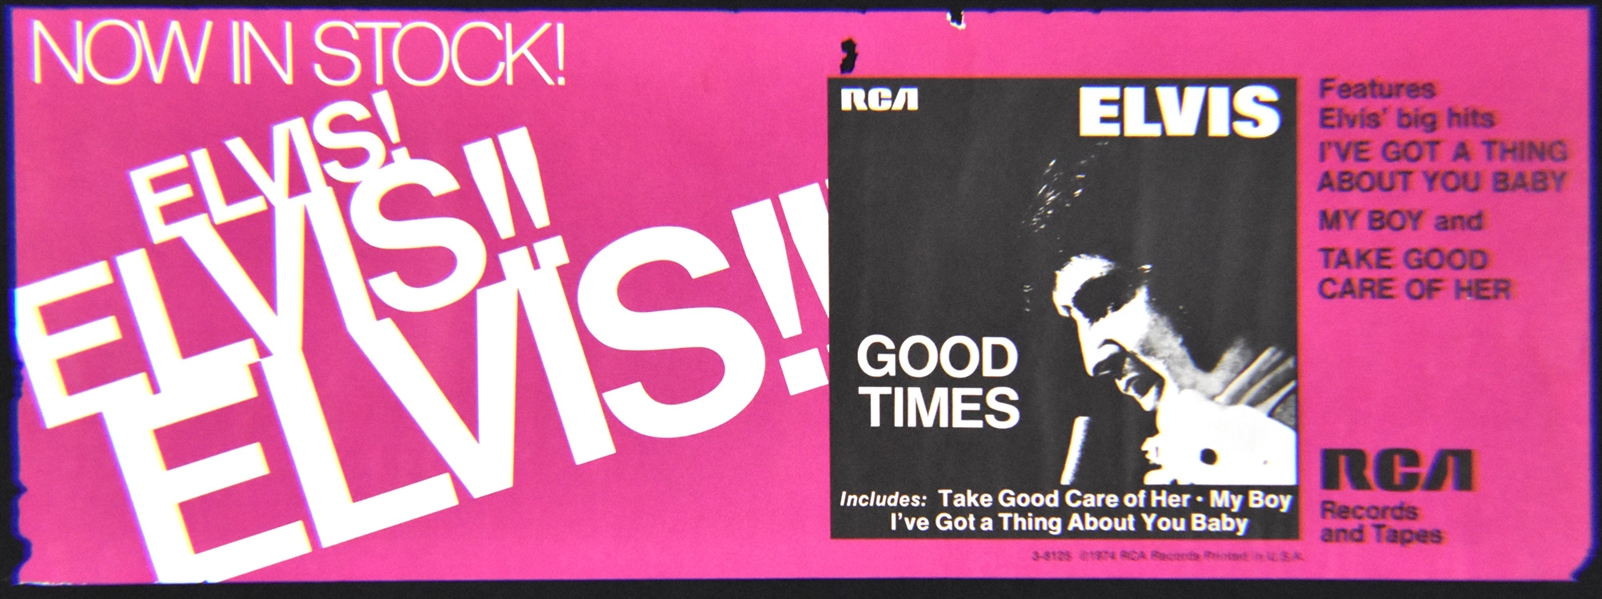 1974 Elvis Presley <em>Good Times</em> LP RCA Record Store Promotional Poster